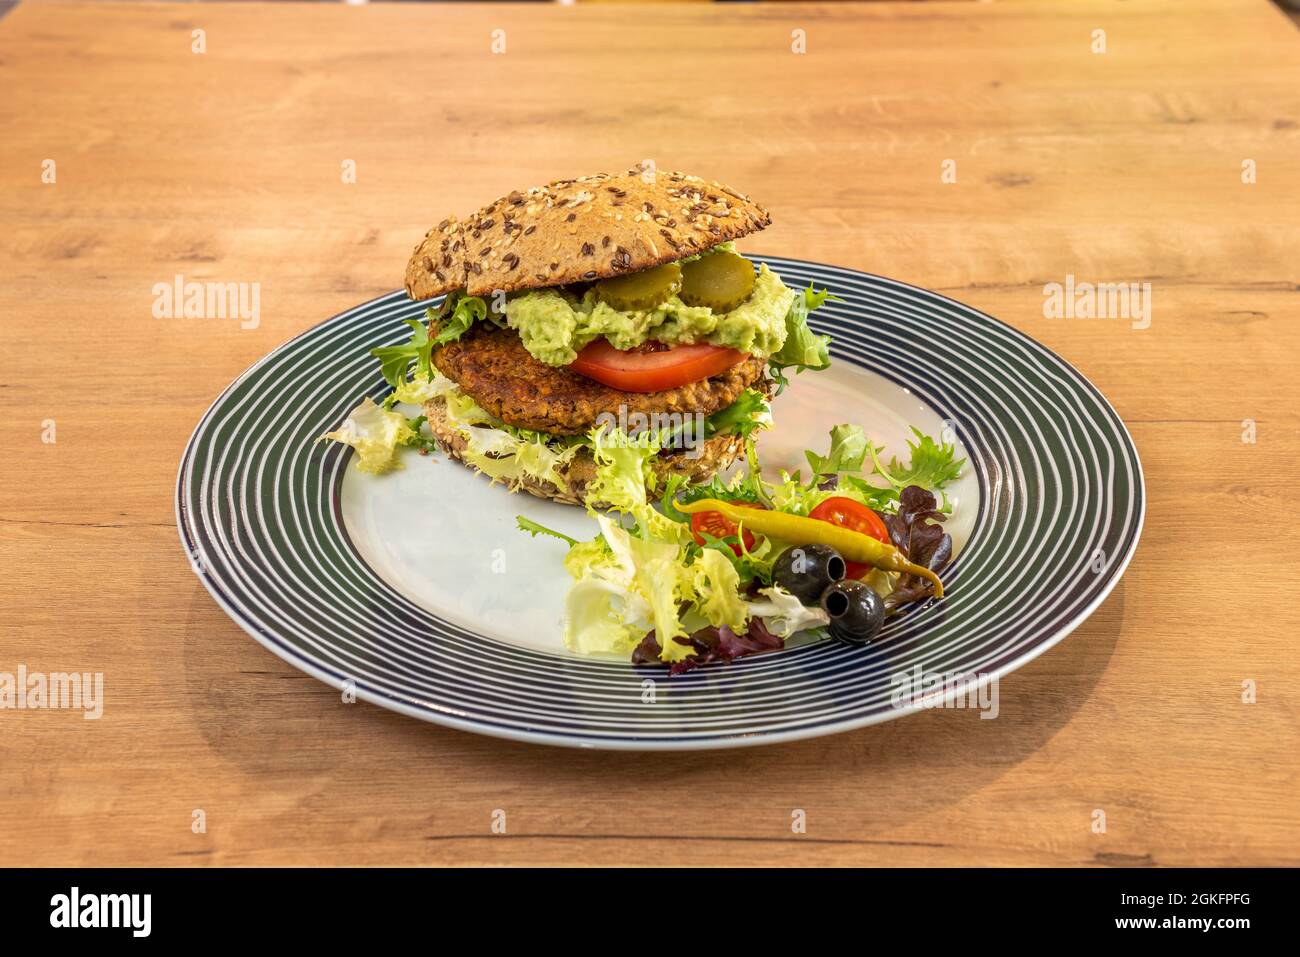 Fantastischer veganer Linsenburger mit Guacamole, Gurken, Tomaten, Salat, Piparra, Schwarze Oliven und Kirschtomaten auf einem schönen Teller Stockfoto